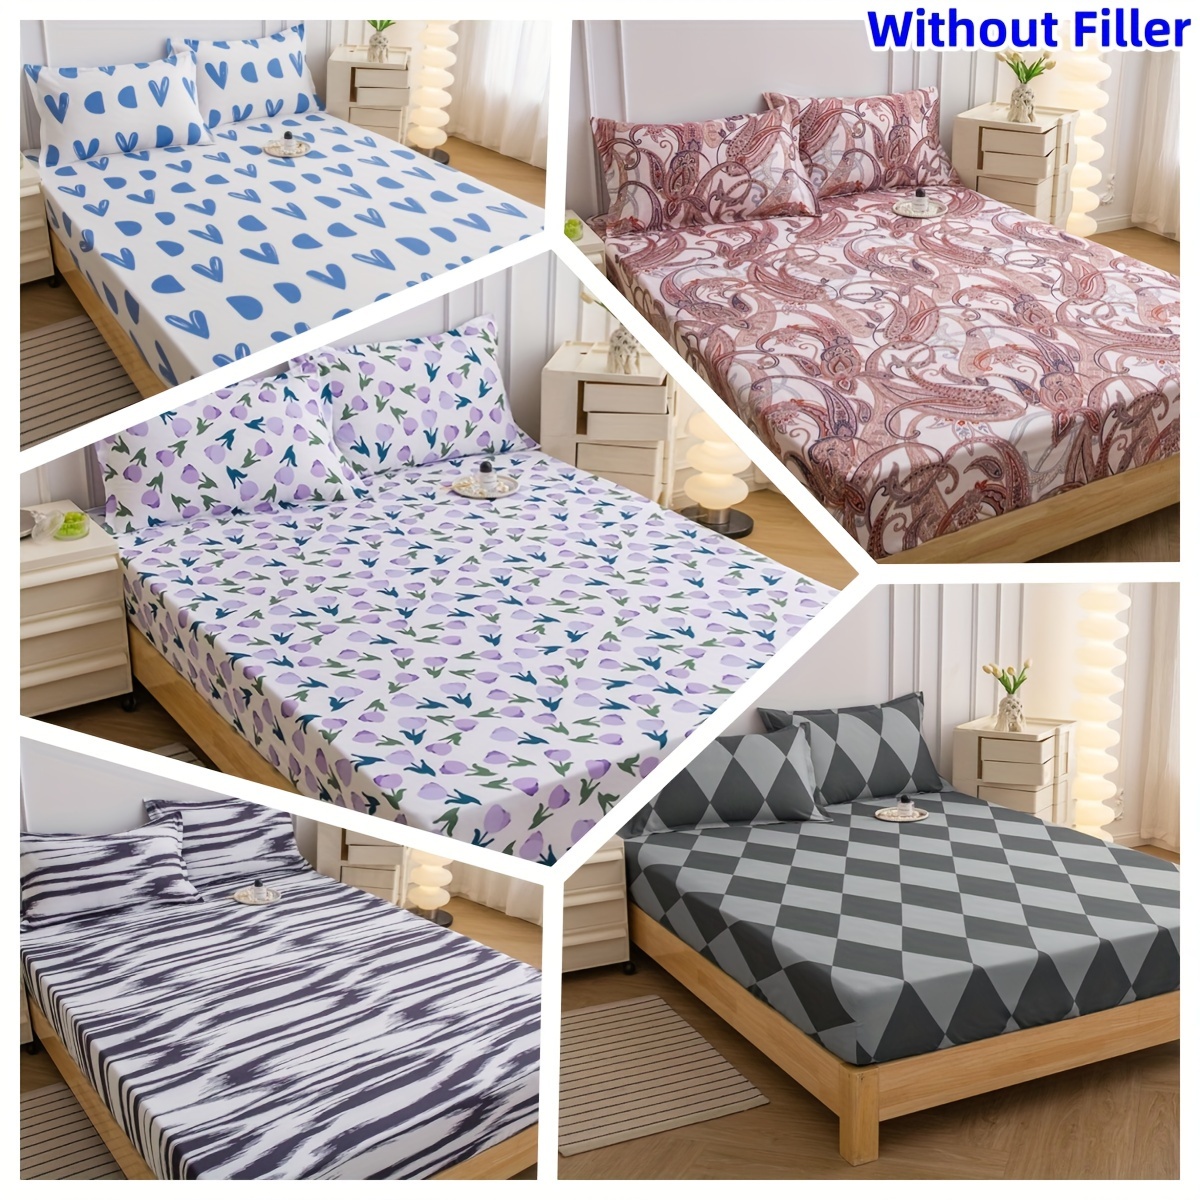 JIANINGHOME Funda de colchón ajustable de 150 x 190 + 25 cm, suave debajo  de la cama hecha de 100% algodón, protector de colchón transpirable